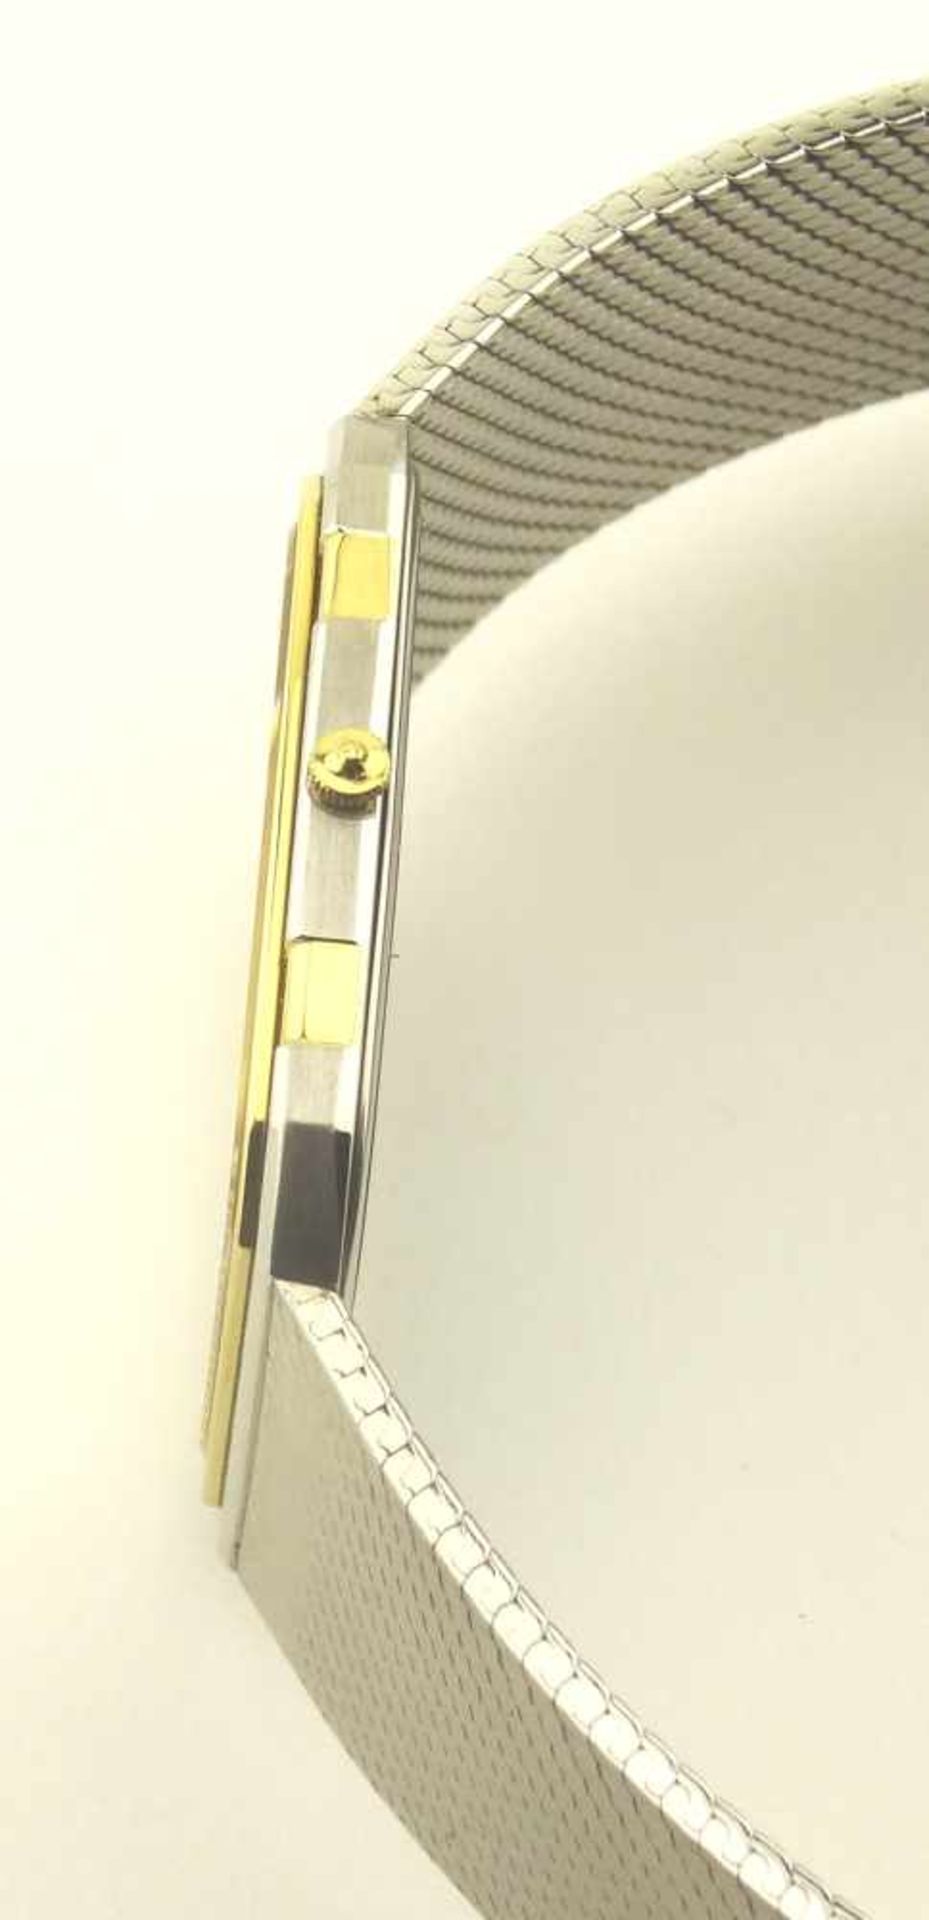 Herrenquarzuhr Seiko Lassale NOS bicolor, mit Stahlband ungetragen NOS, Mod. 6730-5059, Gehäuse - Bild 2 aus 3